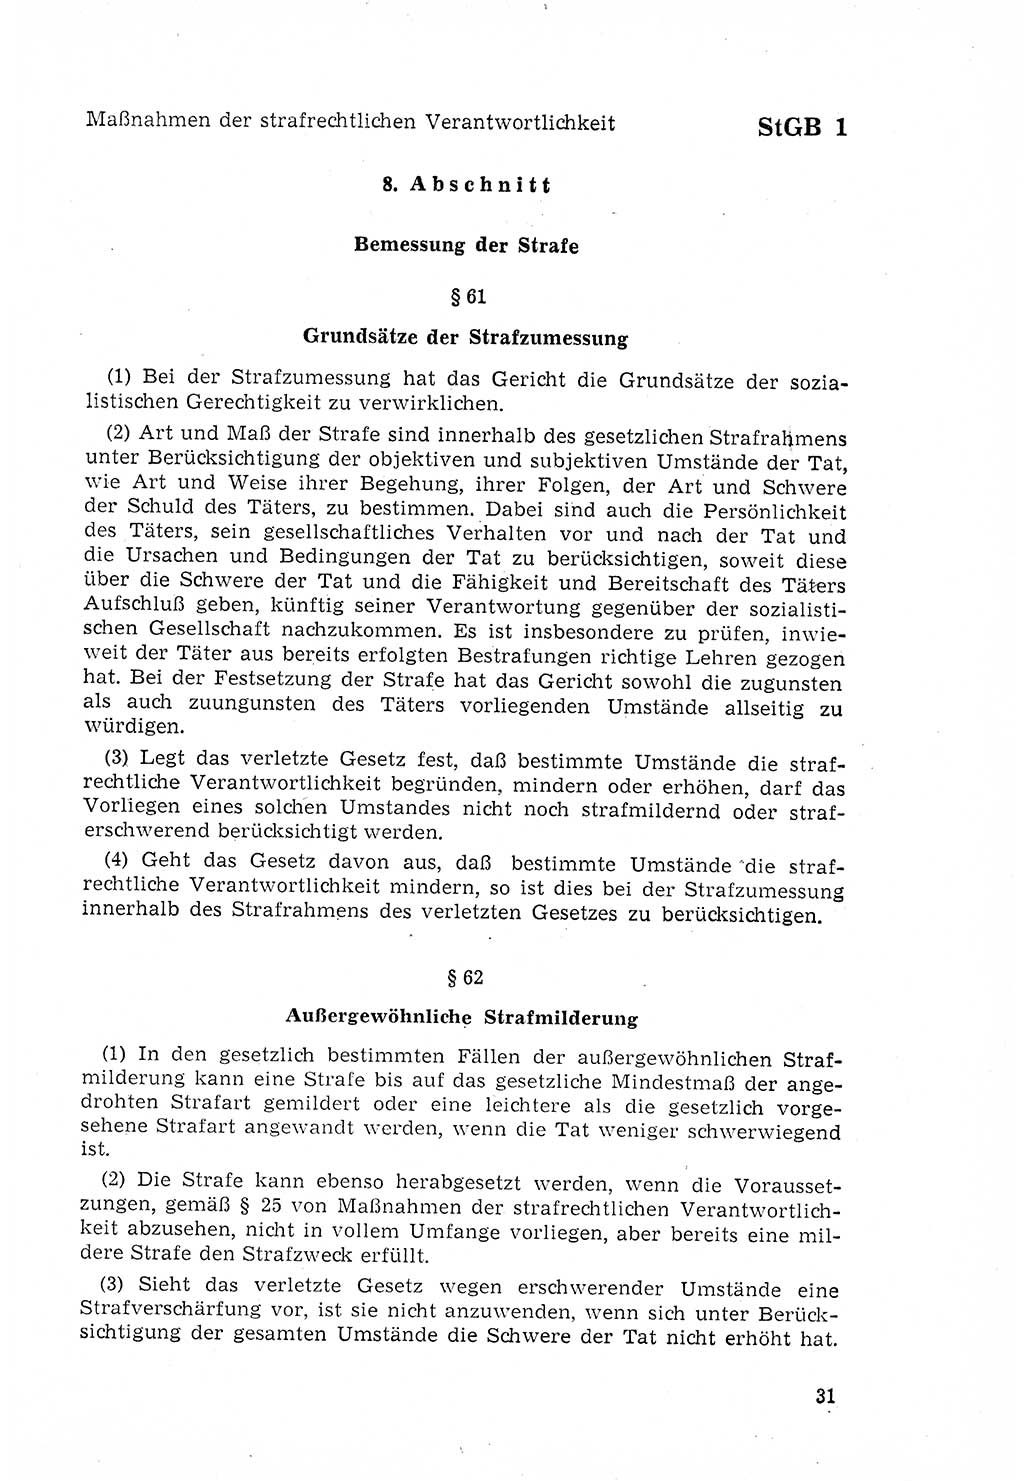 Strafgesetzbuch (StGB) der Deutschen Demokratischen Republik (DDR) 1968, Seite 31 (StGB DDR 1968, S. 31)